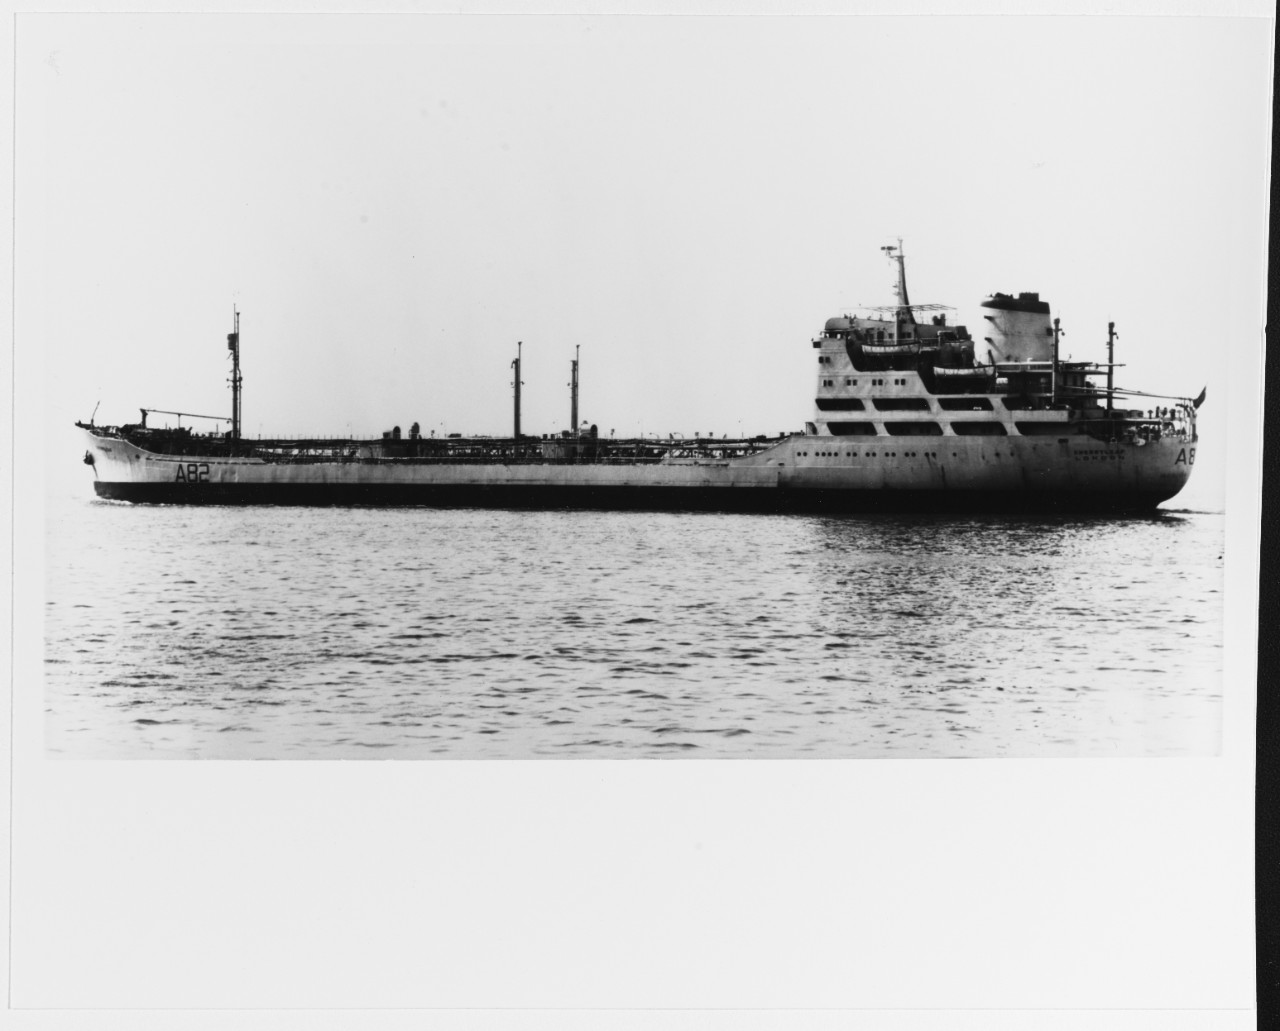 CHERRYLEAF (British Naval Tanker, 1963)